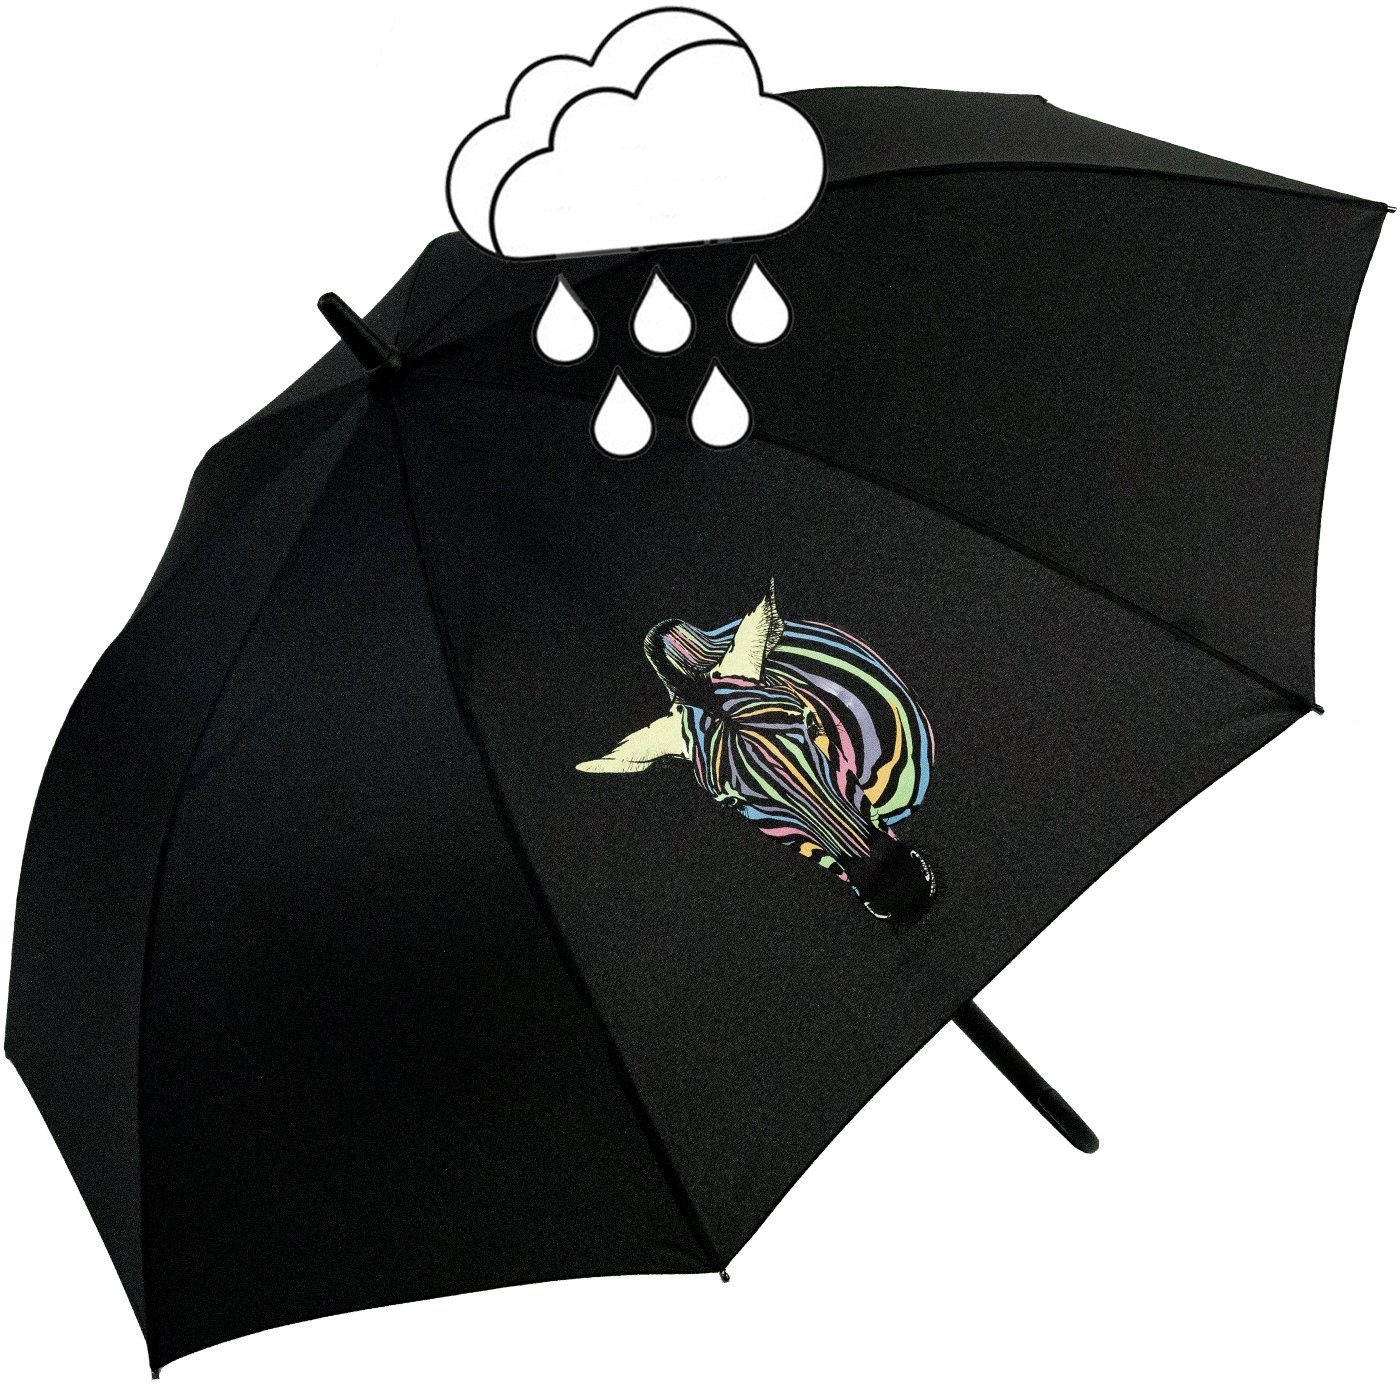 Wow-Effekt, Impliva mit - Langregenschirm Zebra Auf-Automatik Nässe und Damen-Regenschirm bei Farbwechsel Wetprint